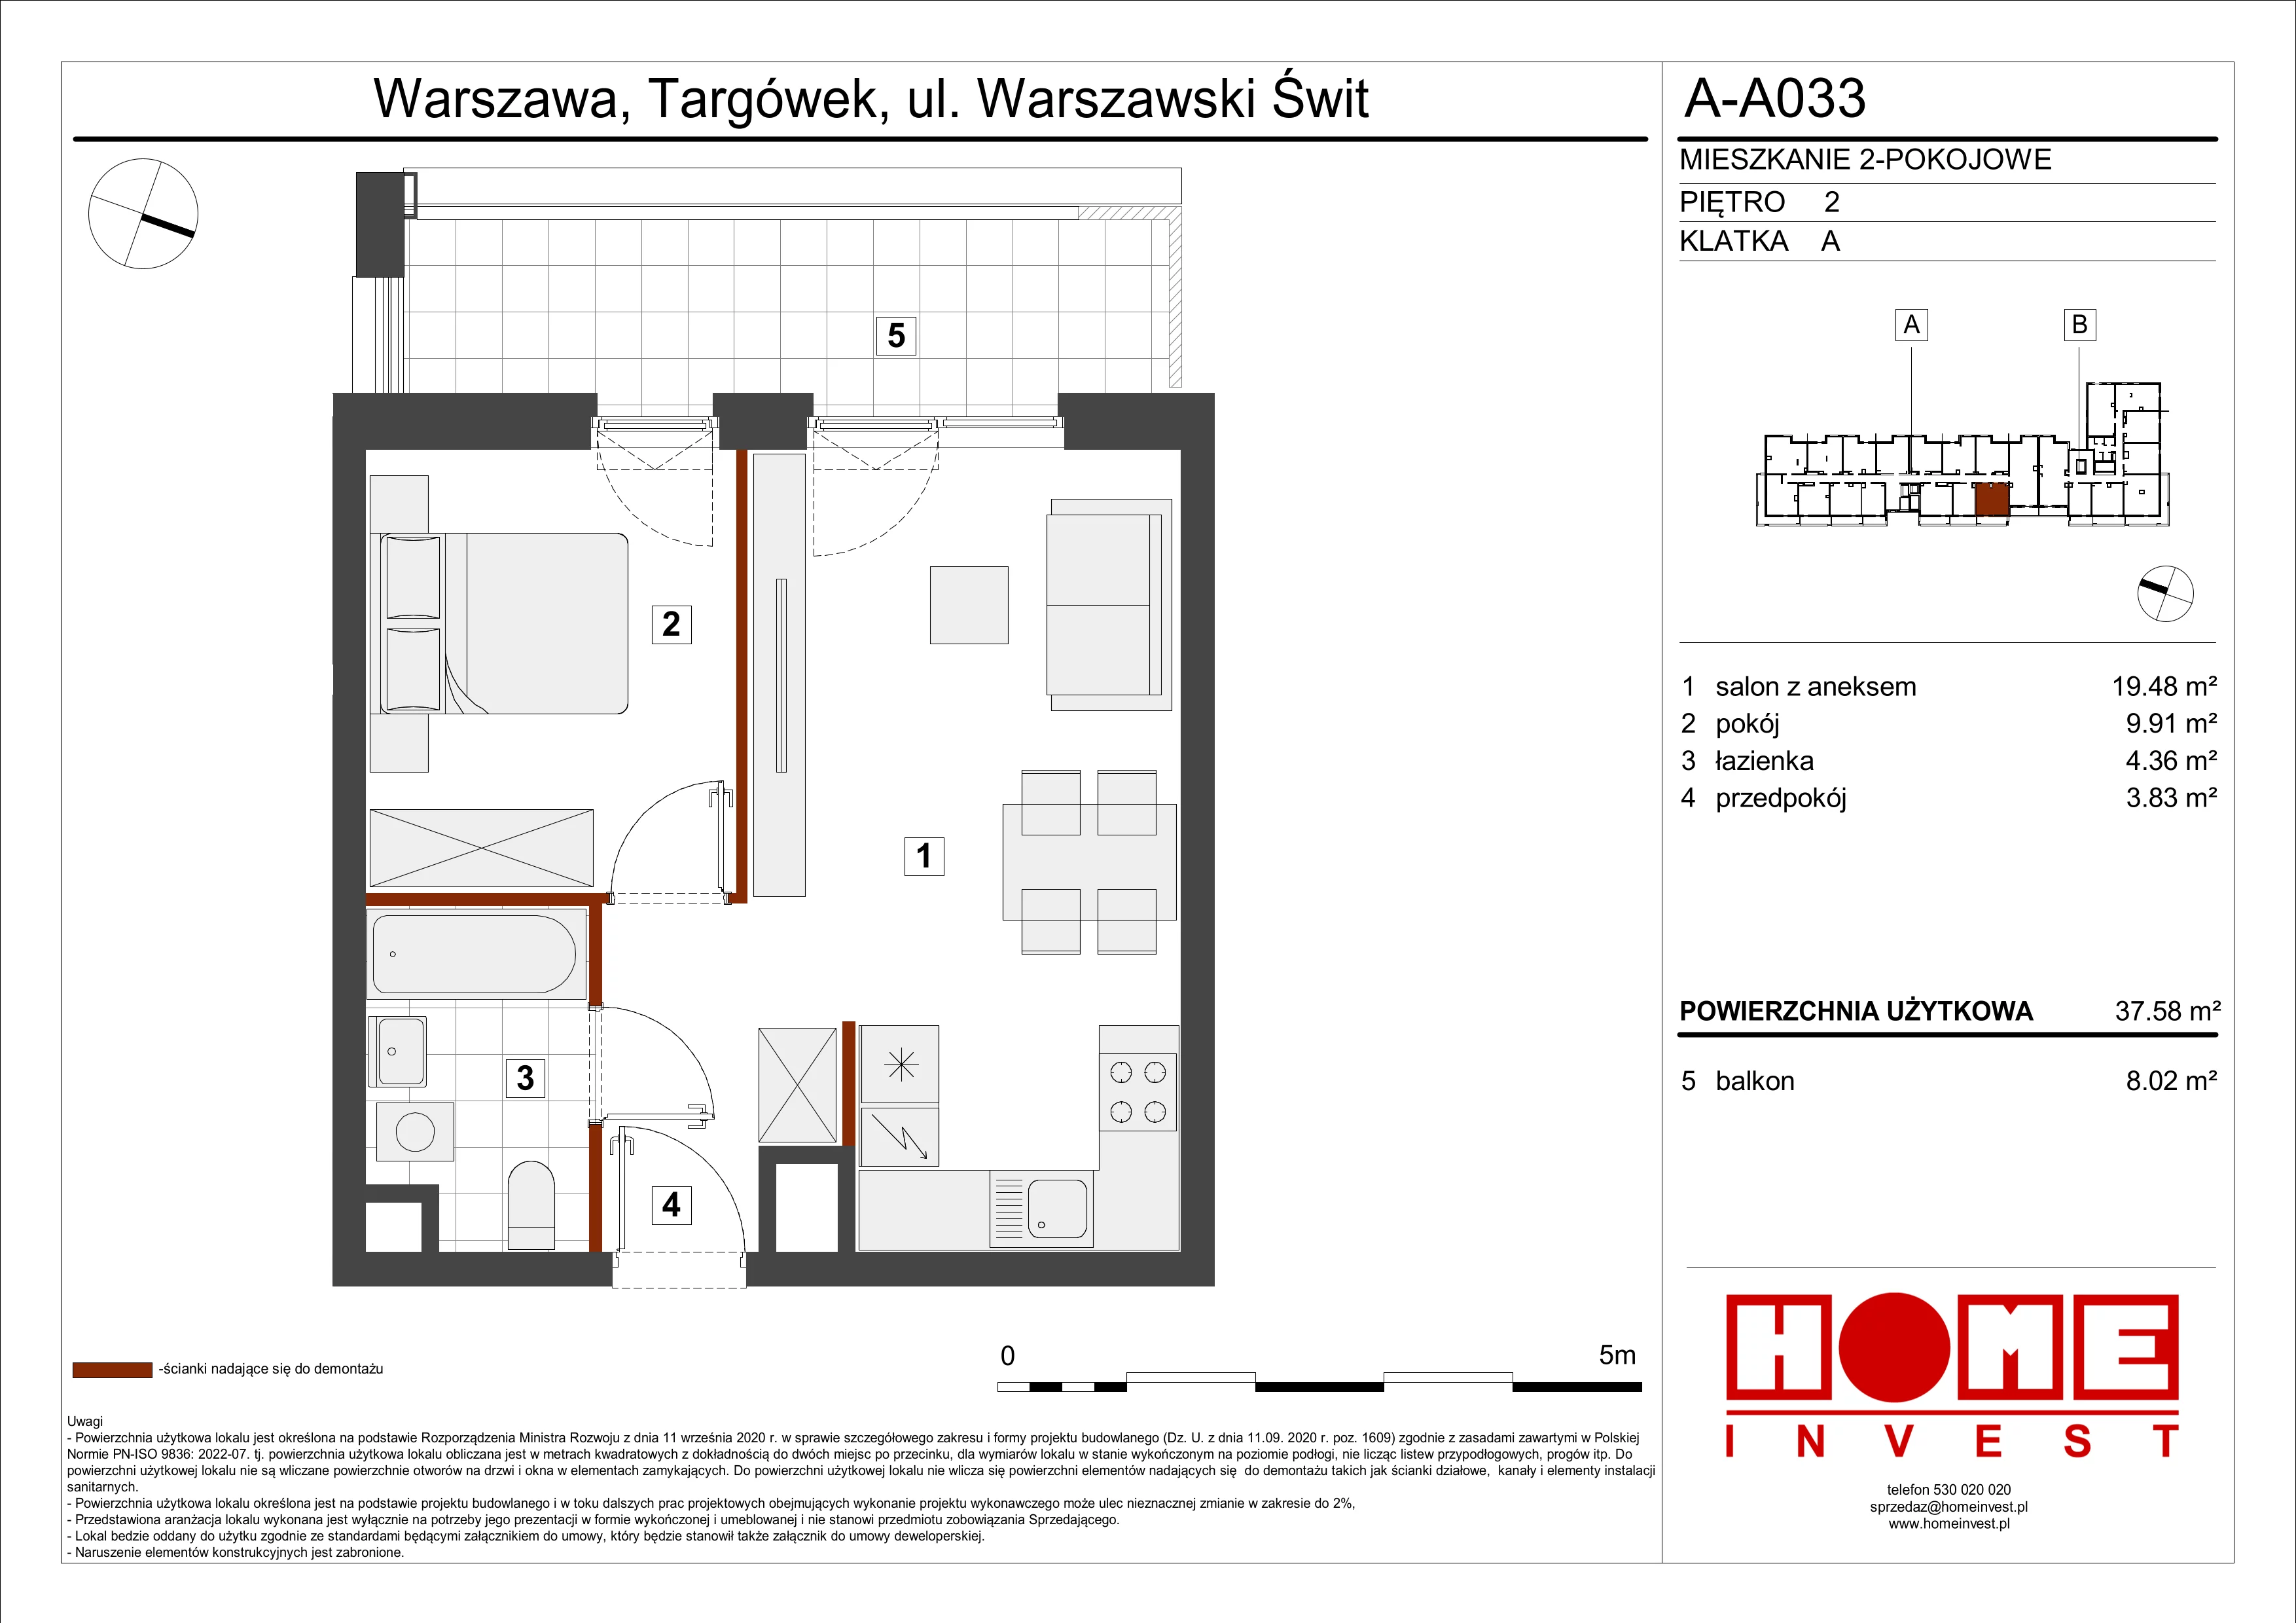 Mieszkanie 37,58 m², piętro 2, oferta nr A-A033, Warszawski Świt, Warszawa, Targówek, Bródno, ul. Warszawski Świt 5